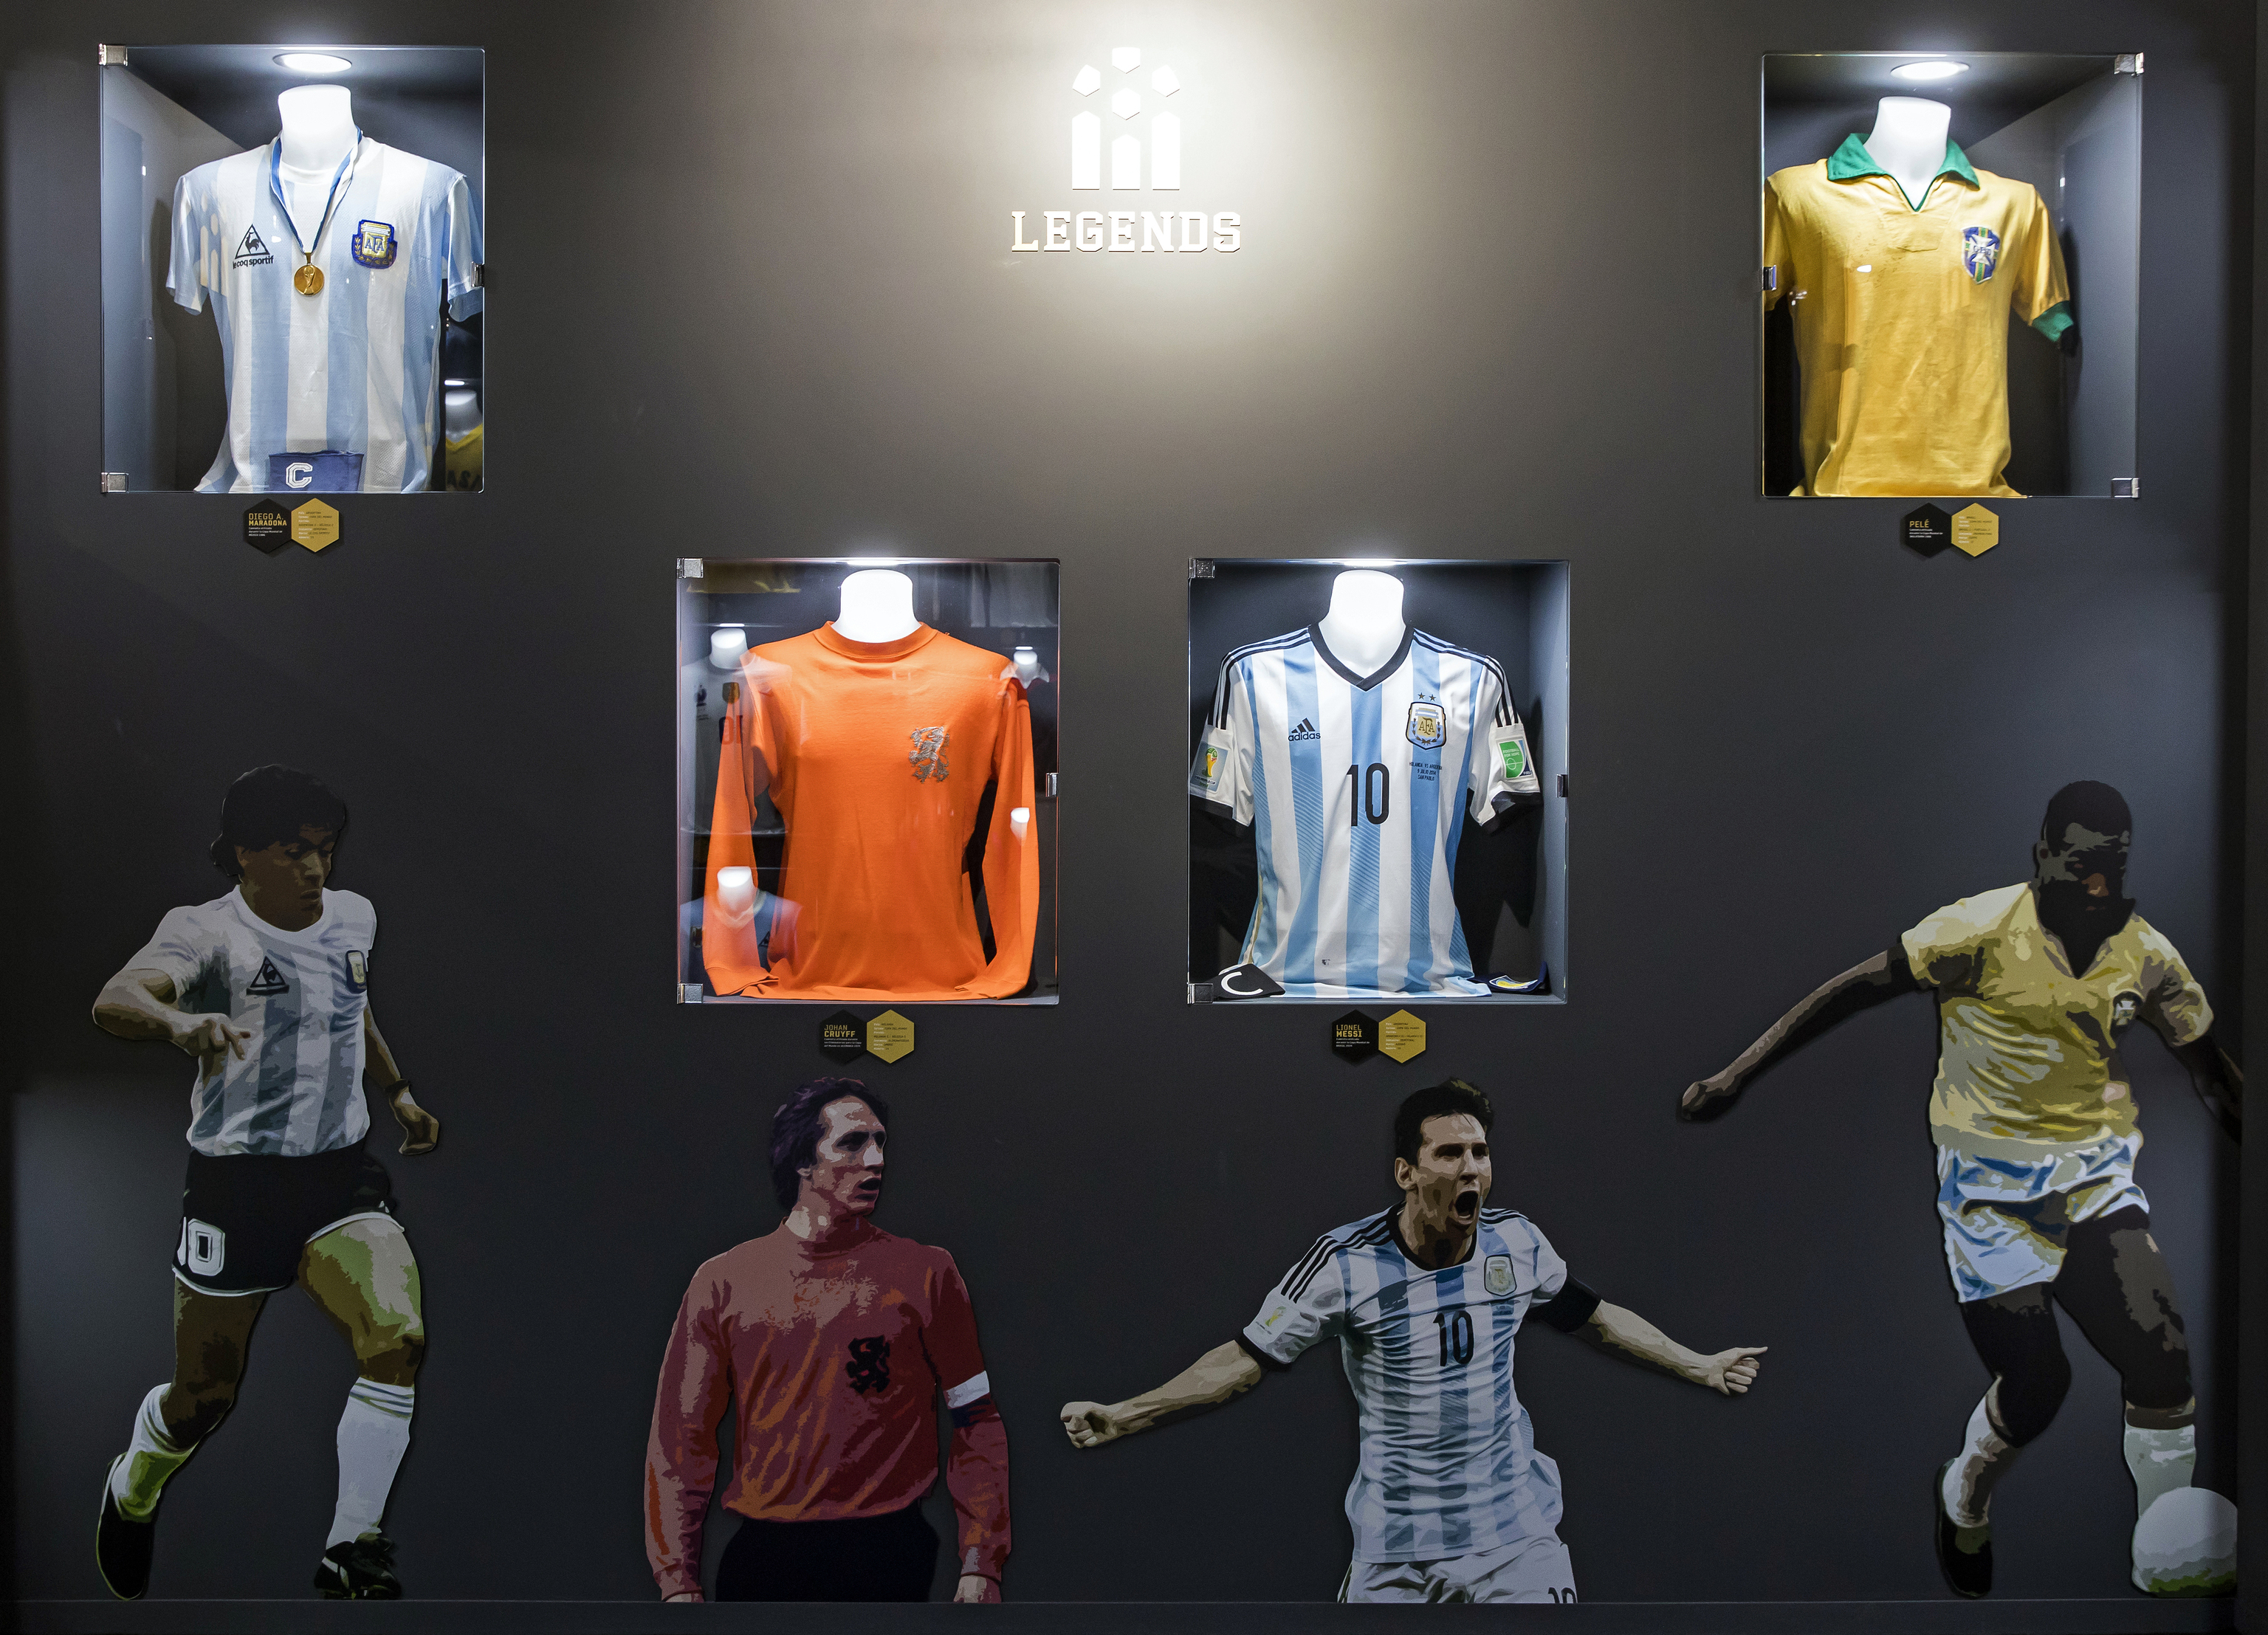 Zamarras de iconos del ftbol mundial como Maradona, Cruyff, Messi y Pel.